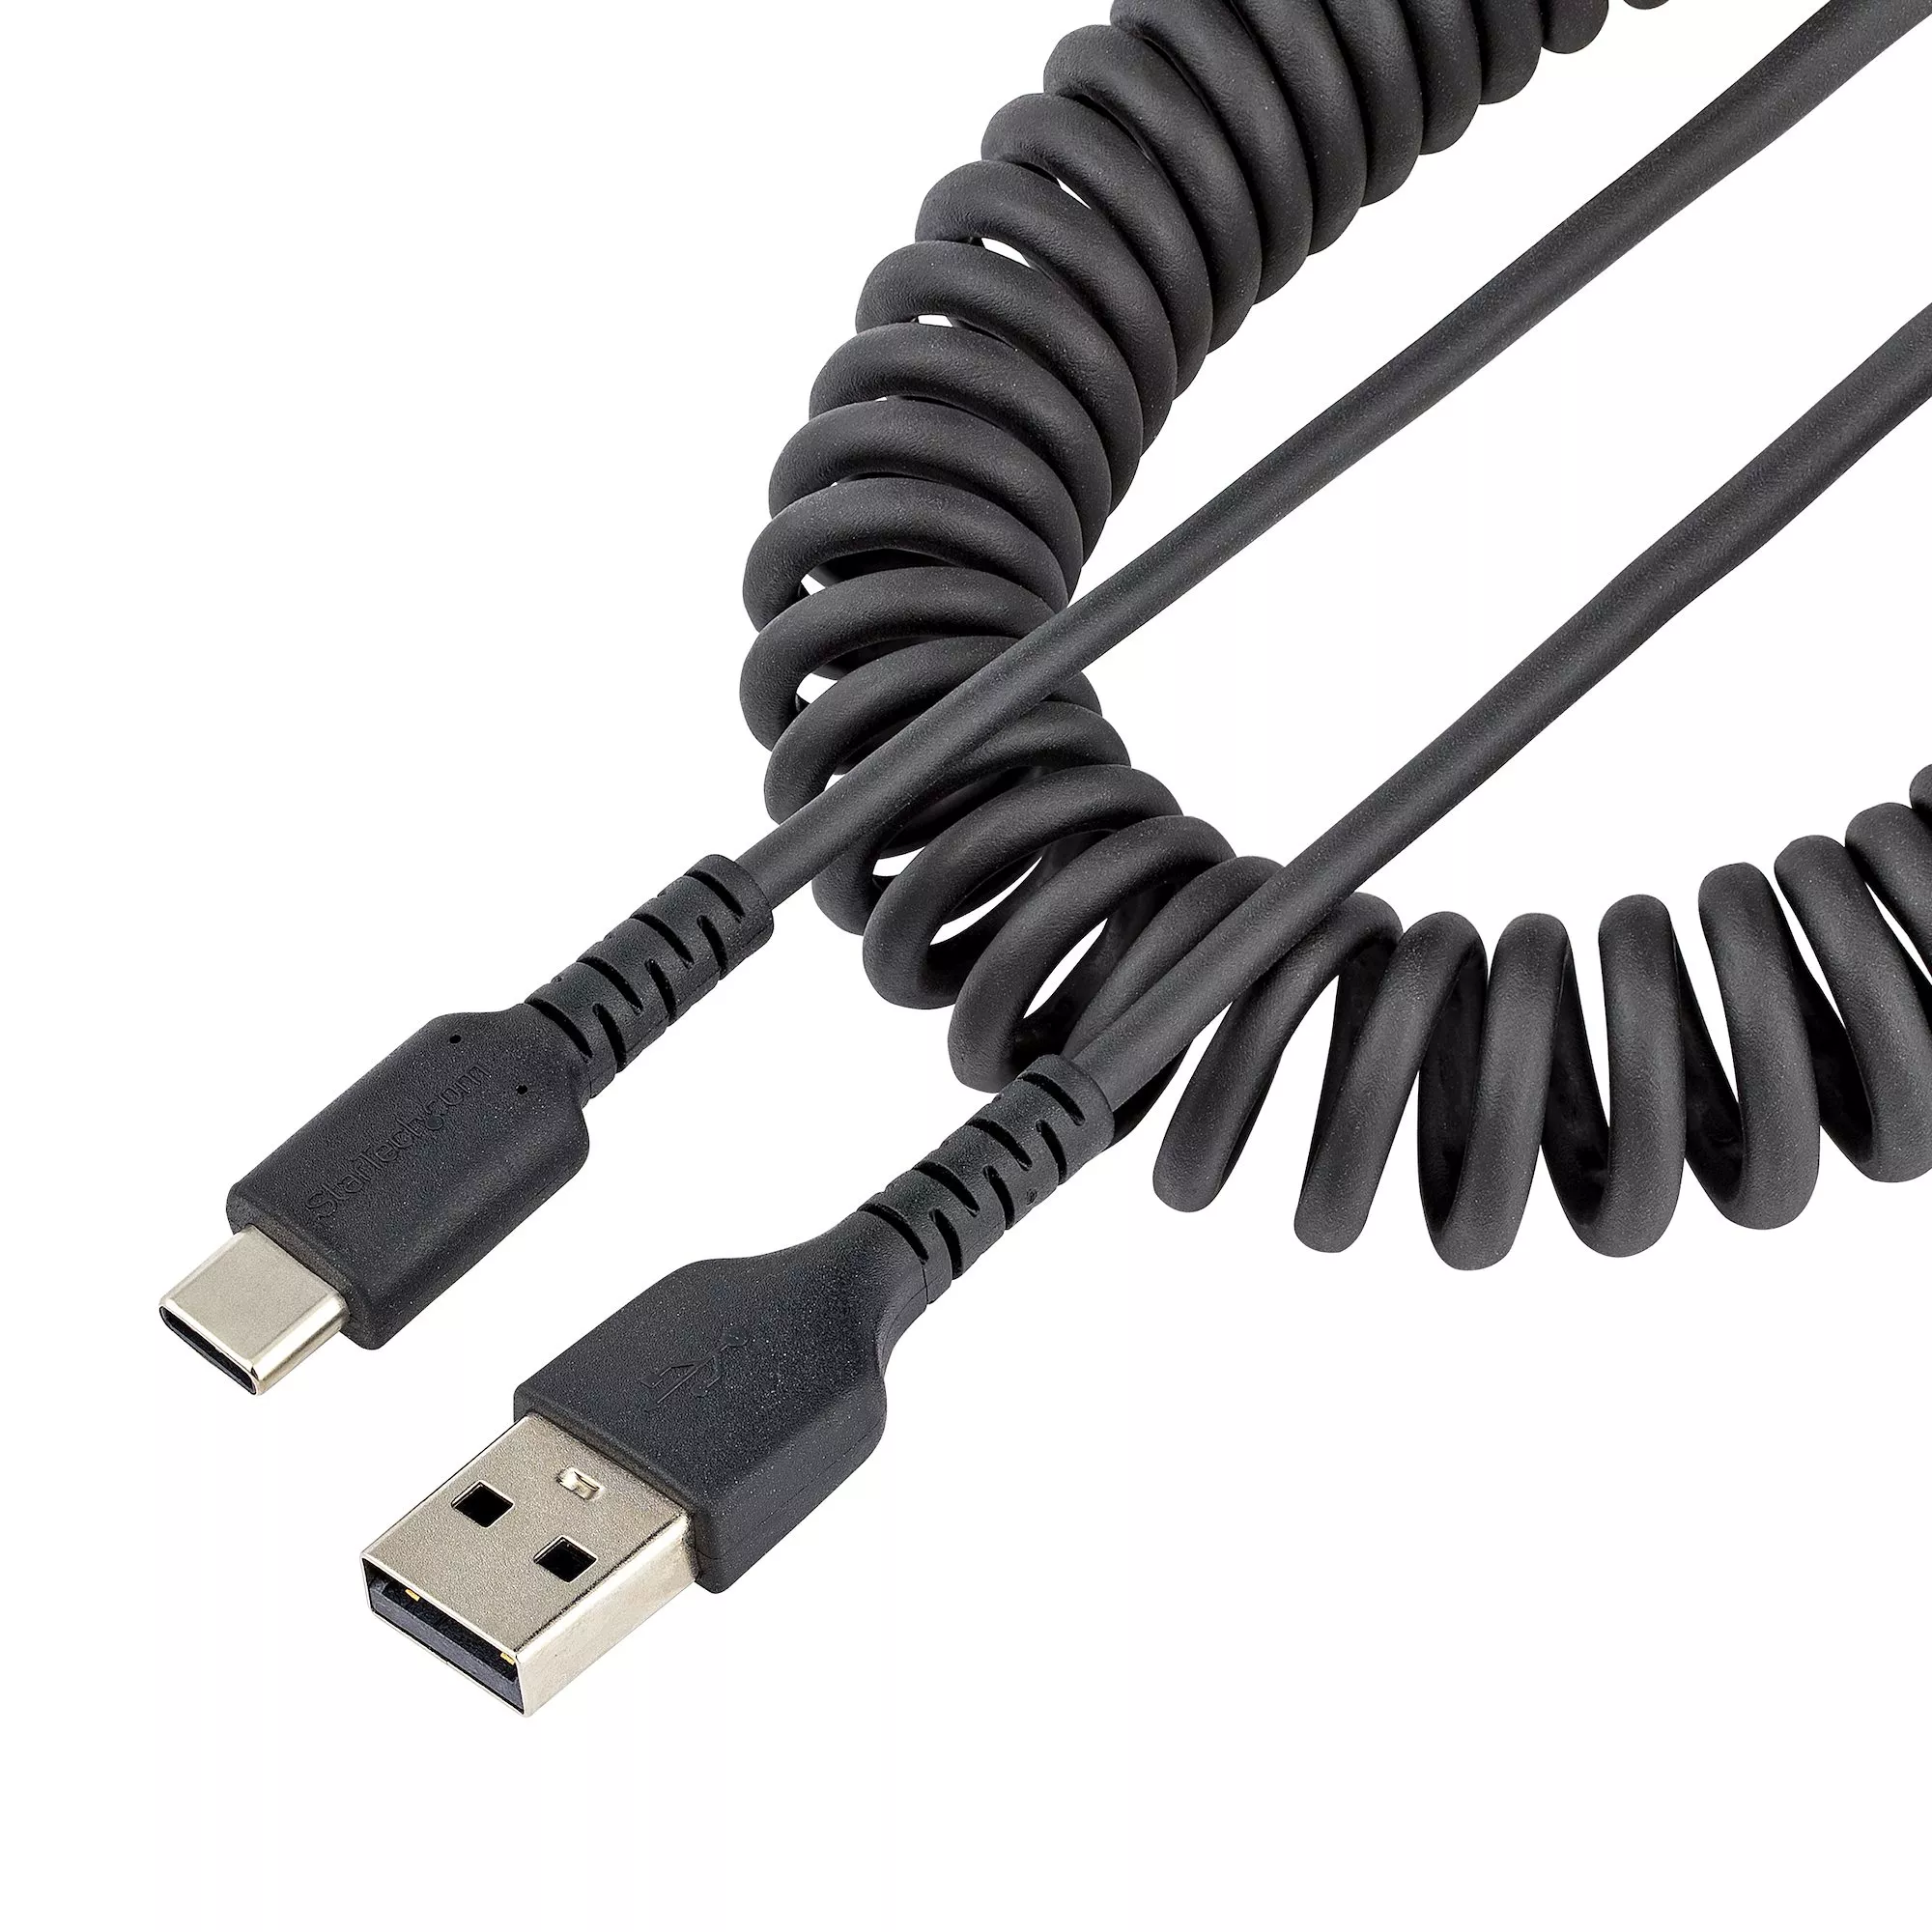 Startech : CABLE D extension / RALLONGE USB 3.0 A VERS A de 2M - M